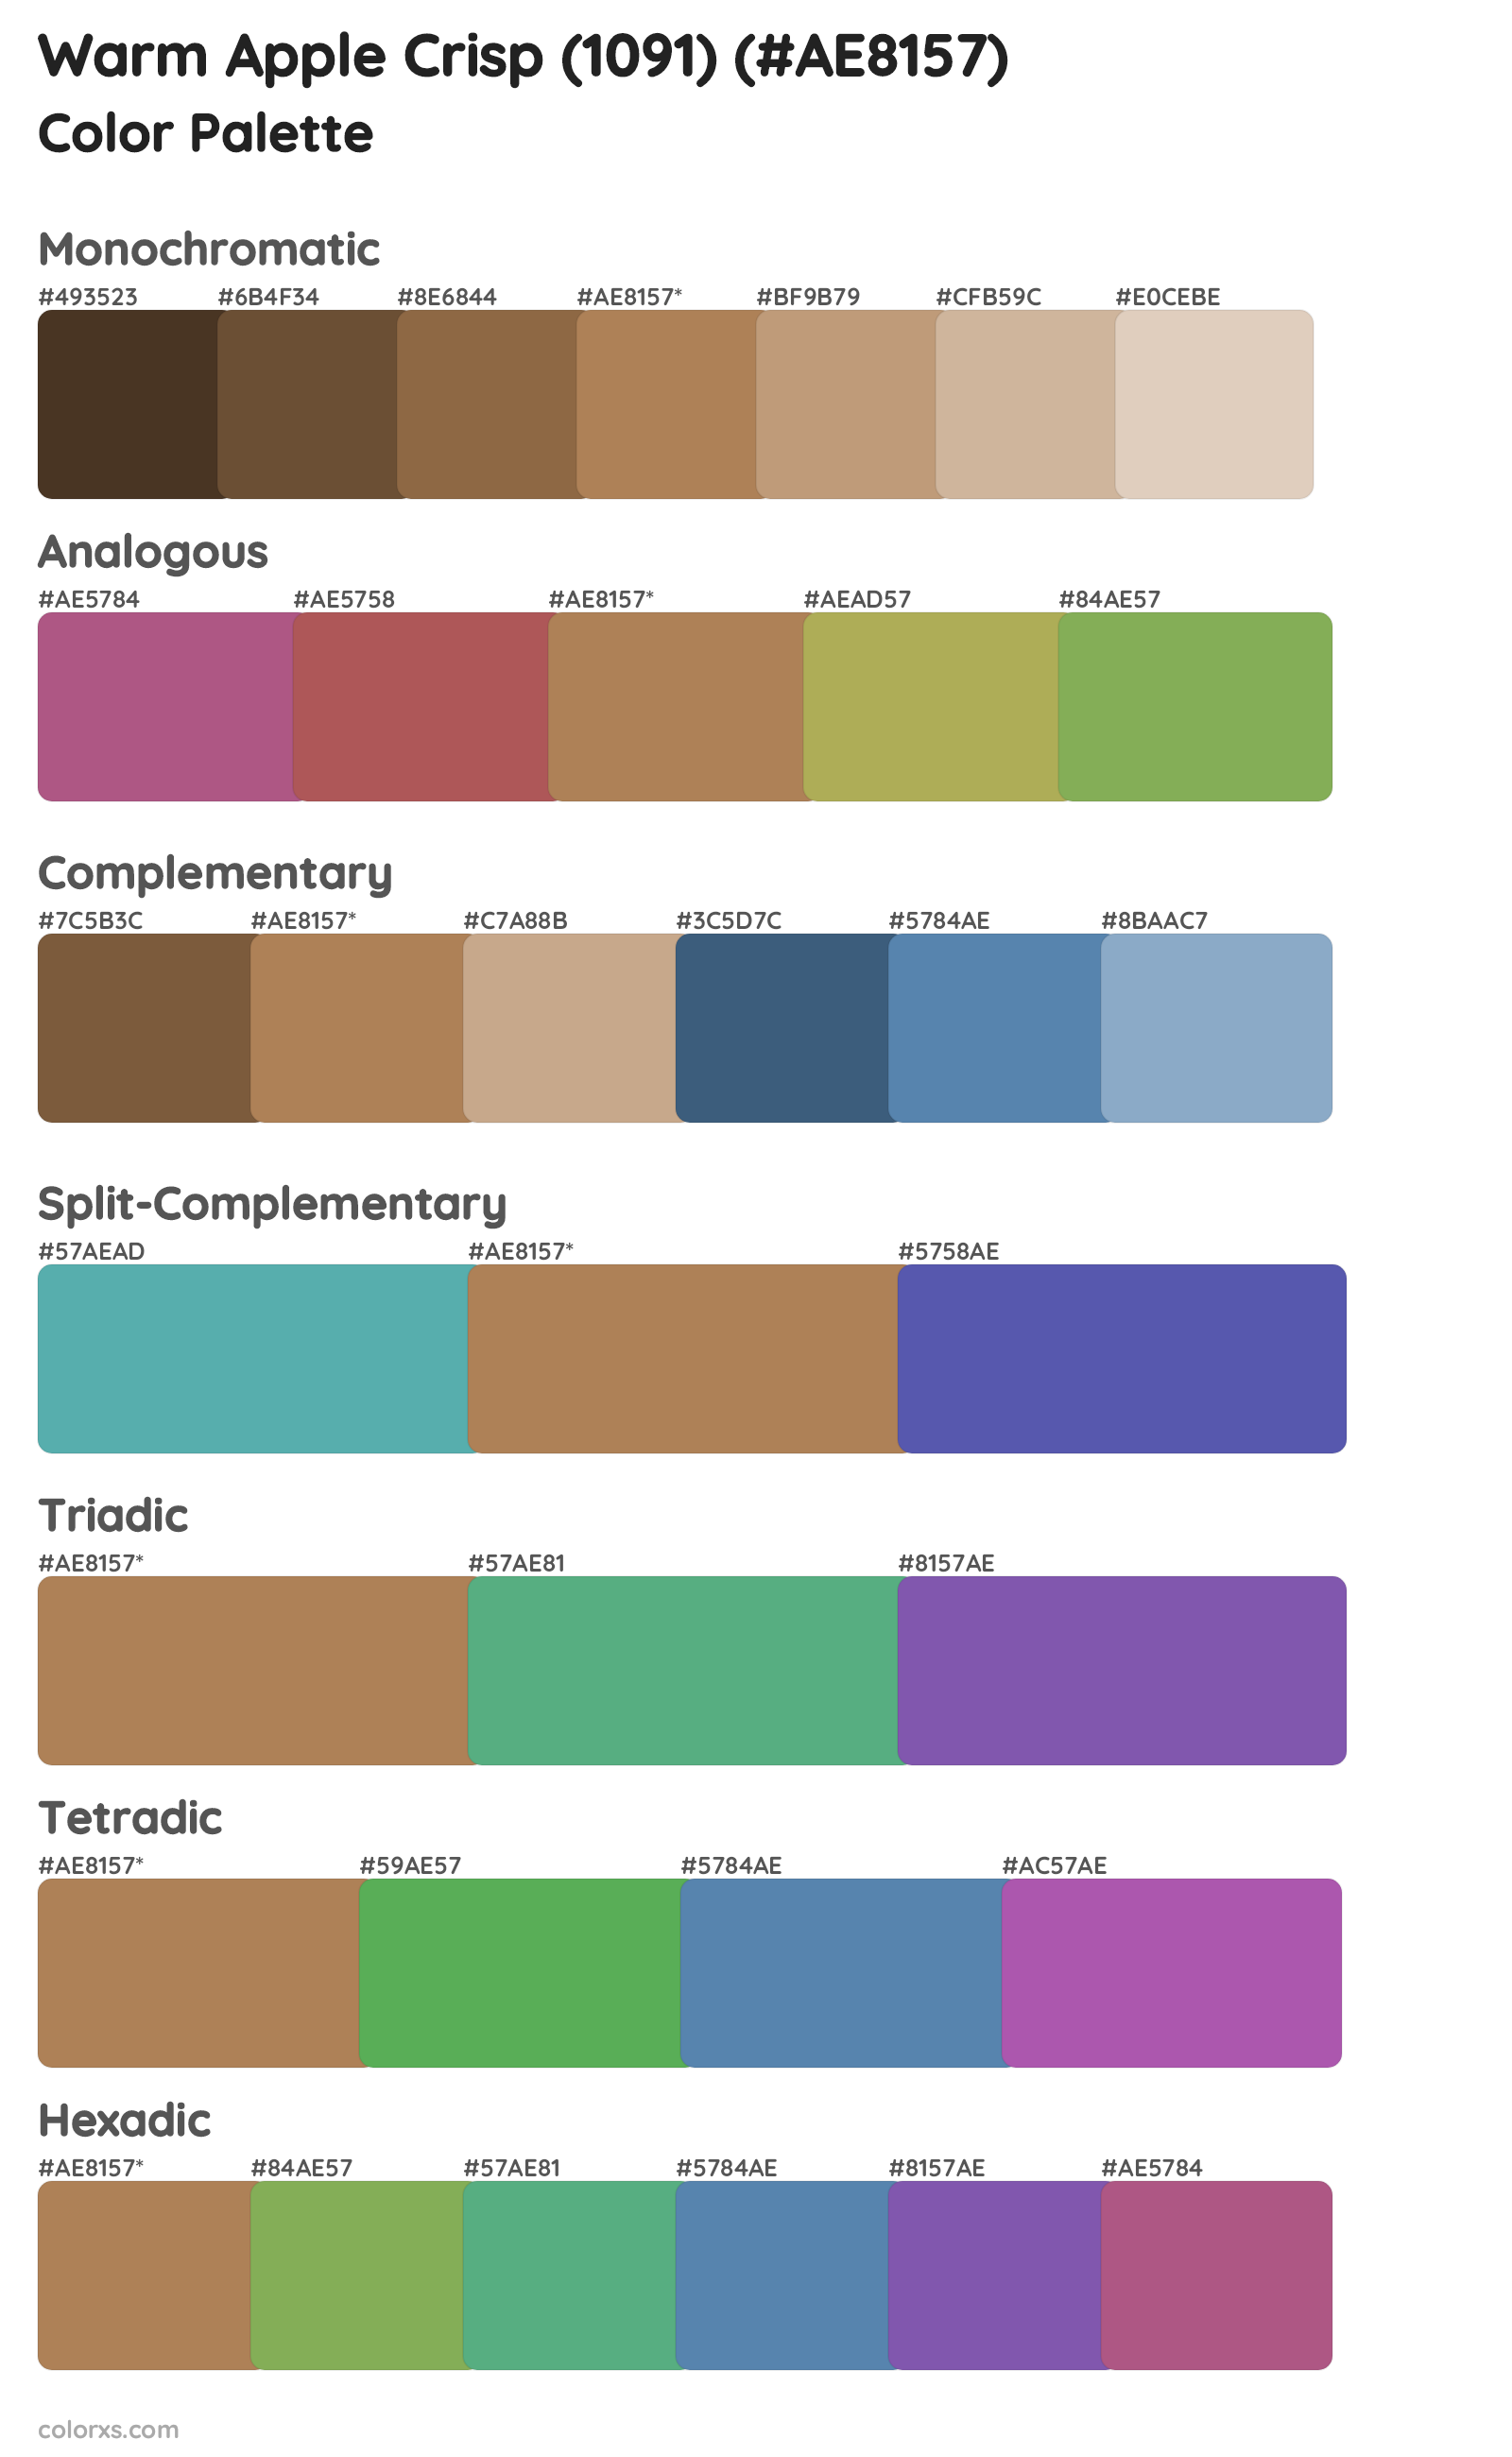 Warm Apple Crisp (1091) Color Scheme Palettes